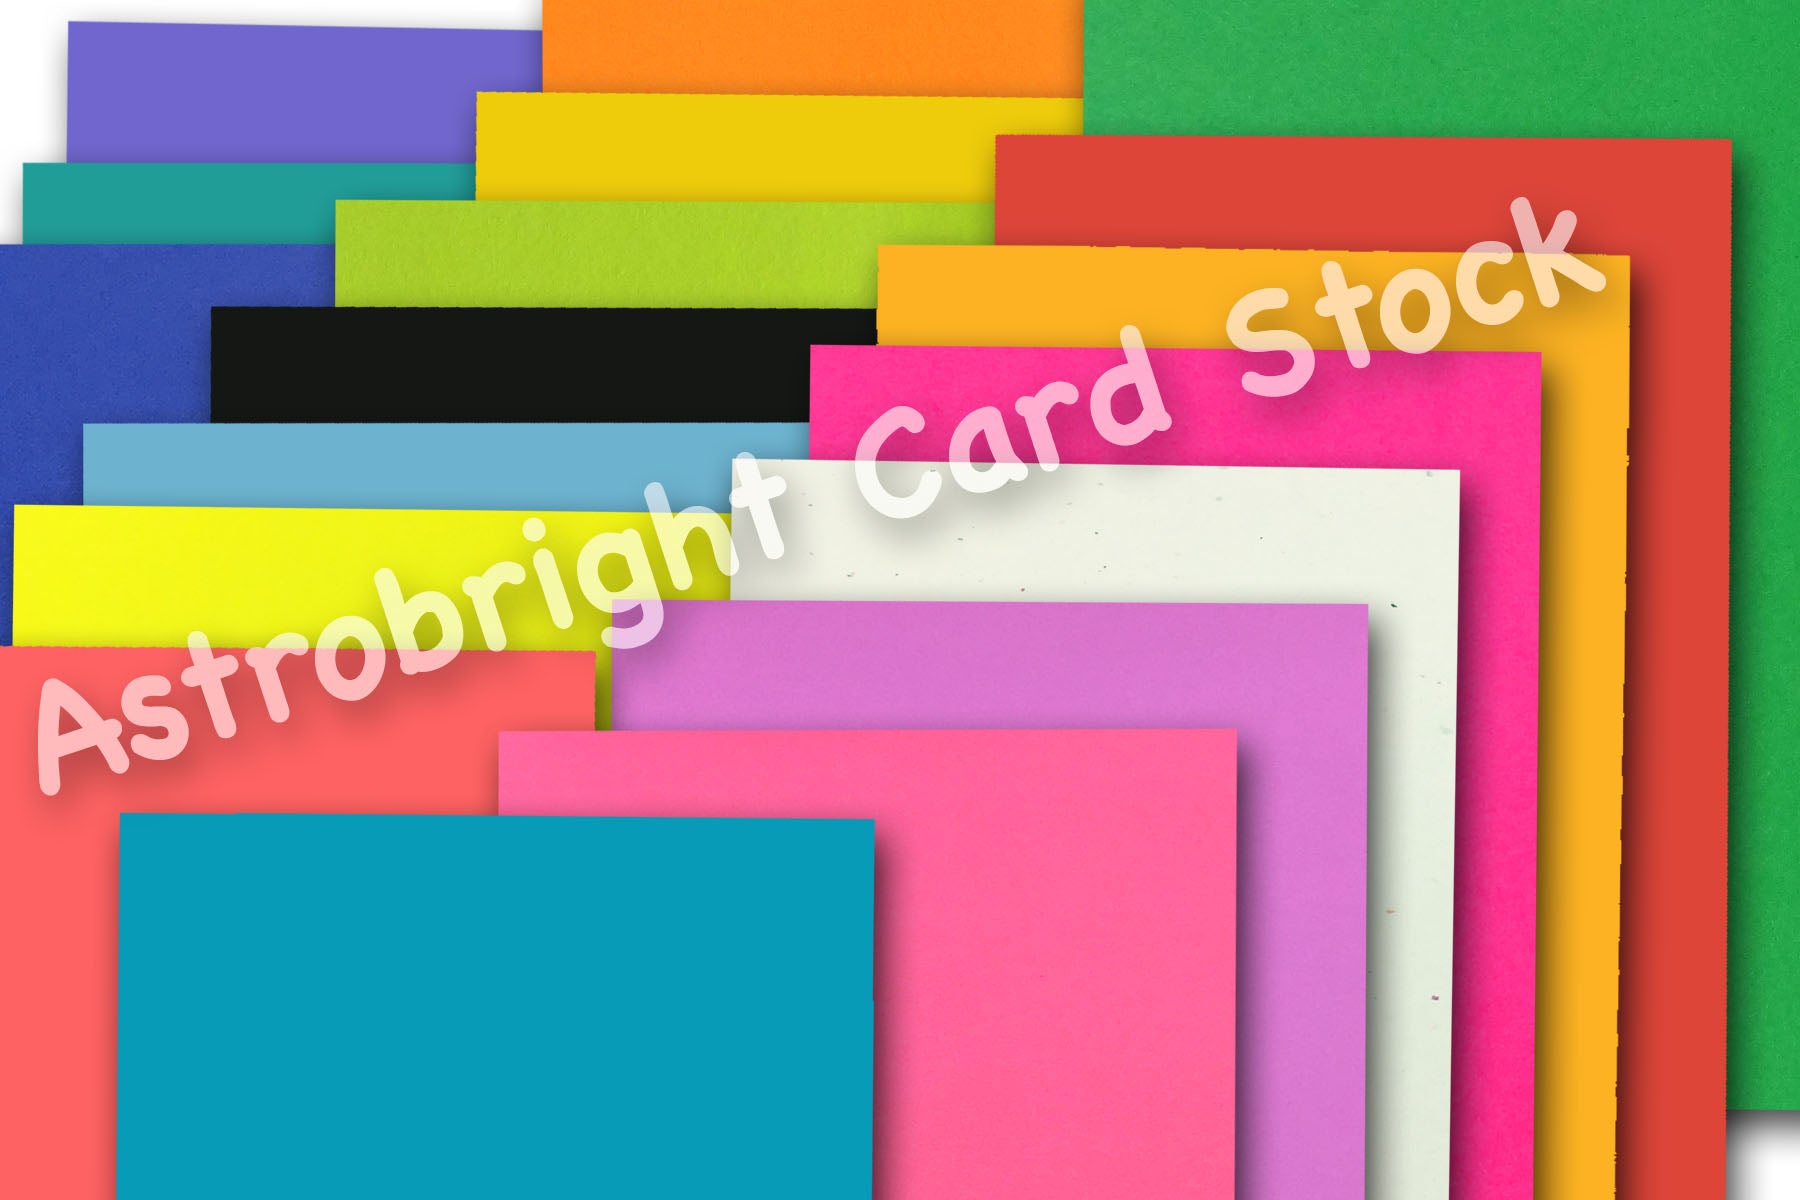 Astrobrights Color Cardstock, 65lb, 8.5 x 11, Venus Violet, 250/Pack